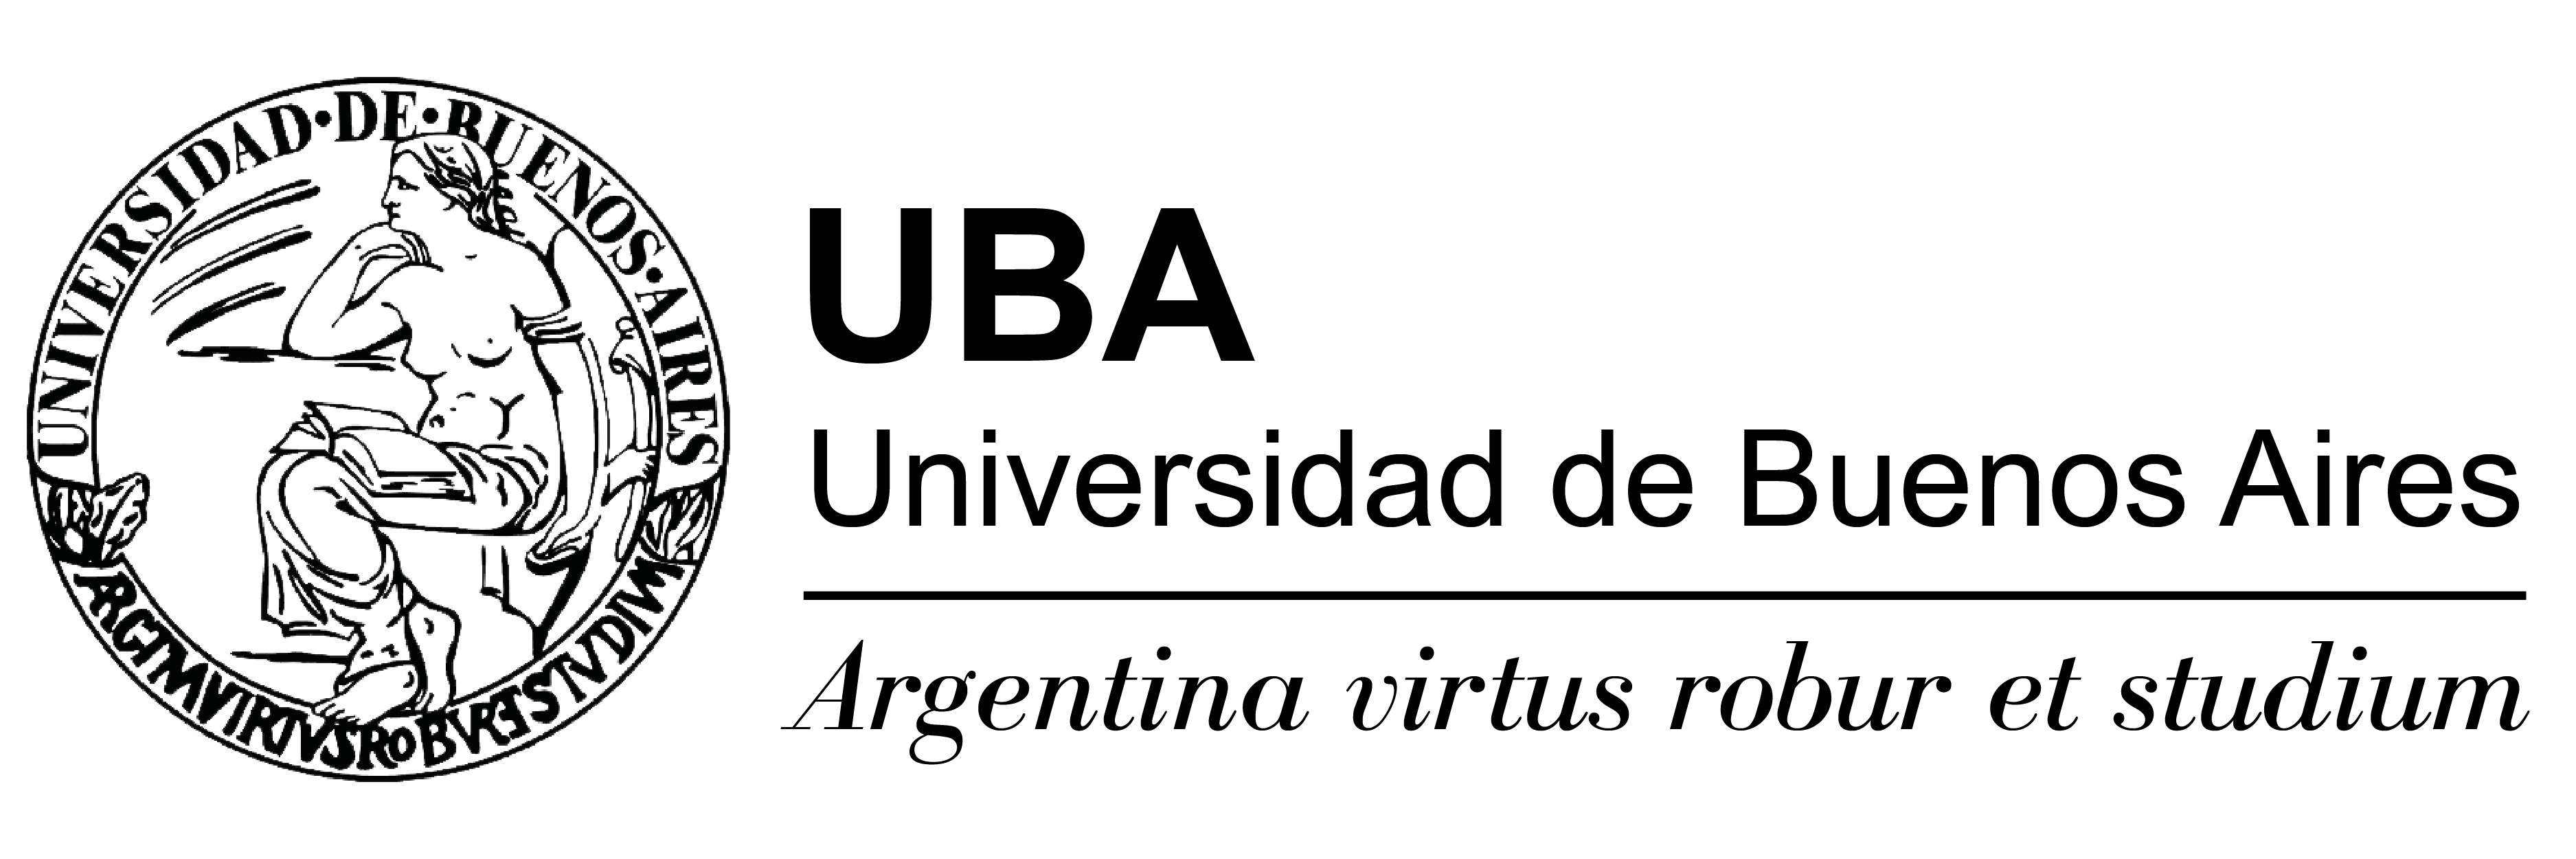 logo uba